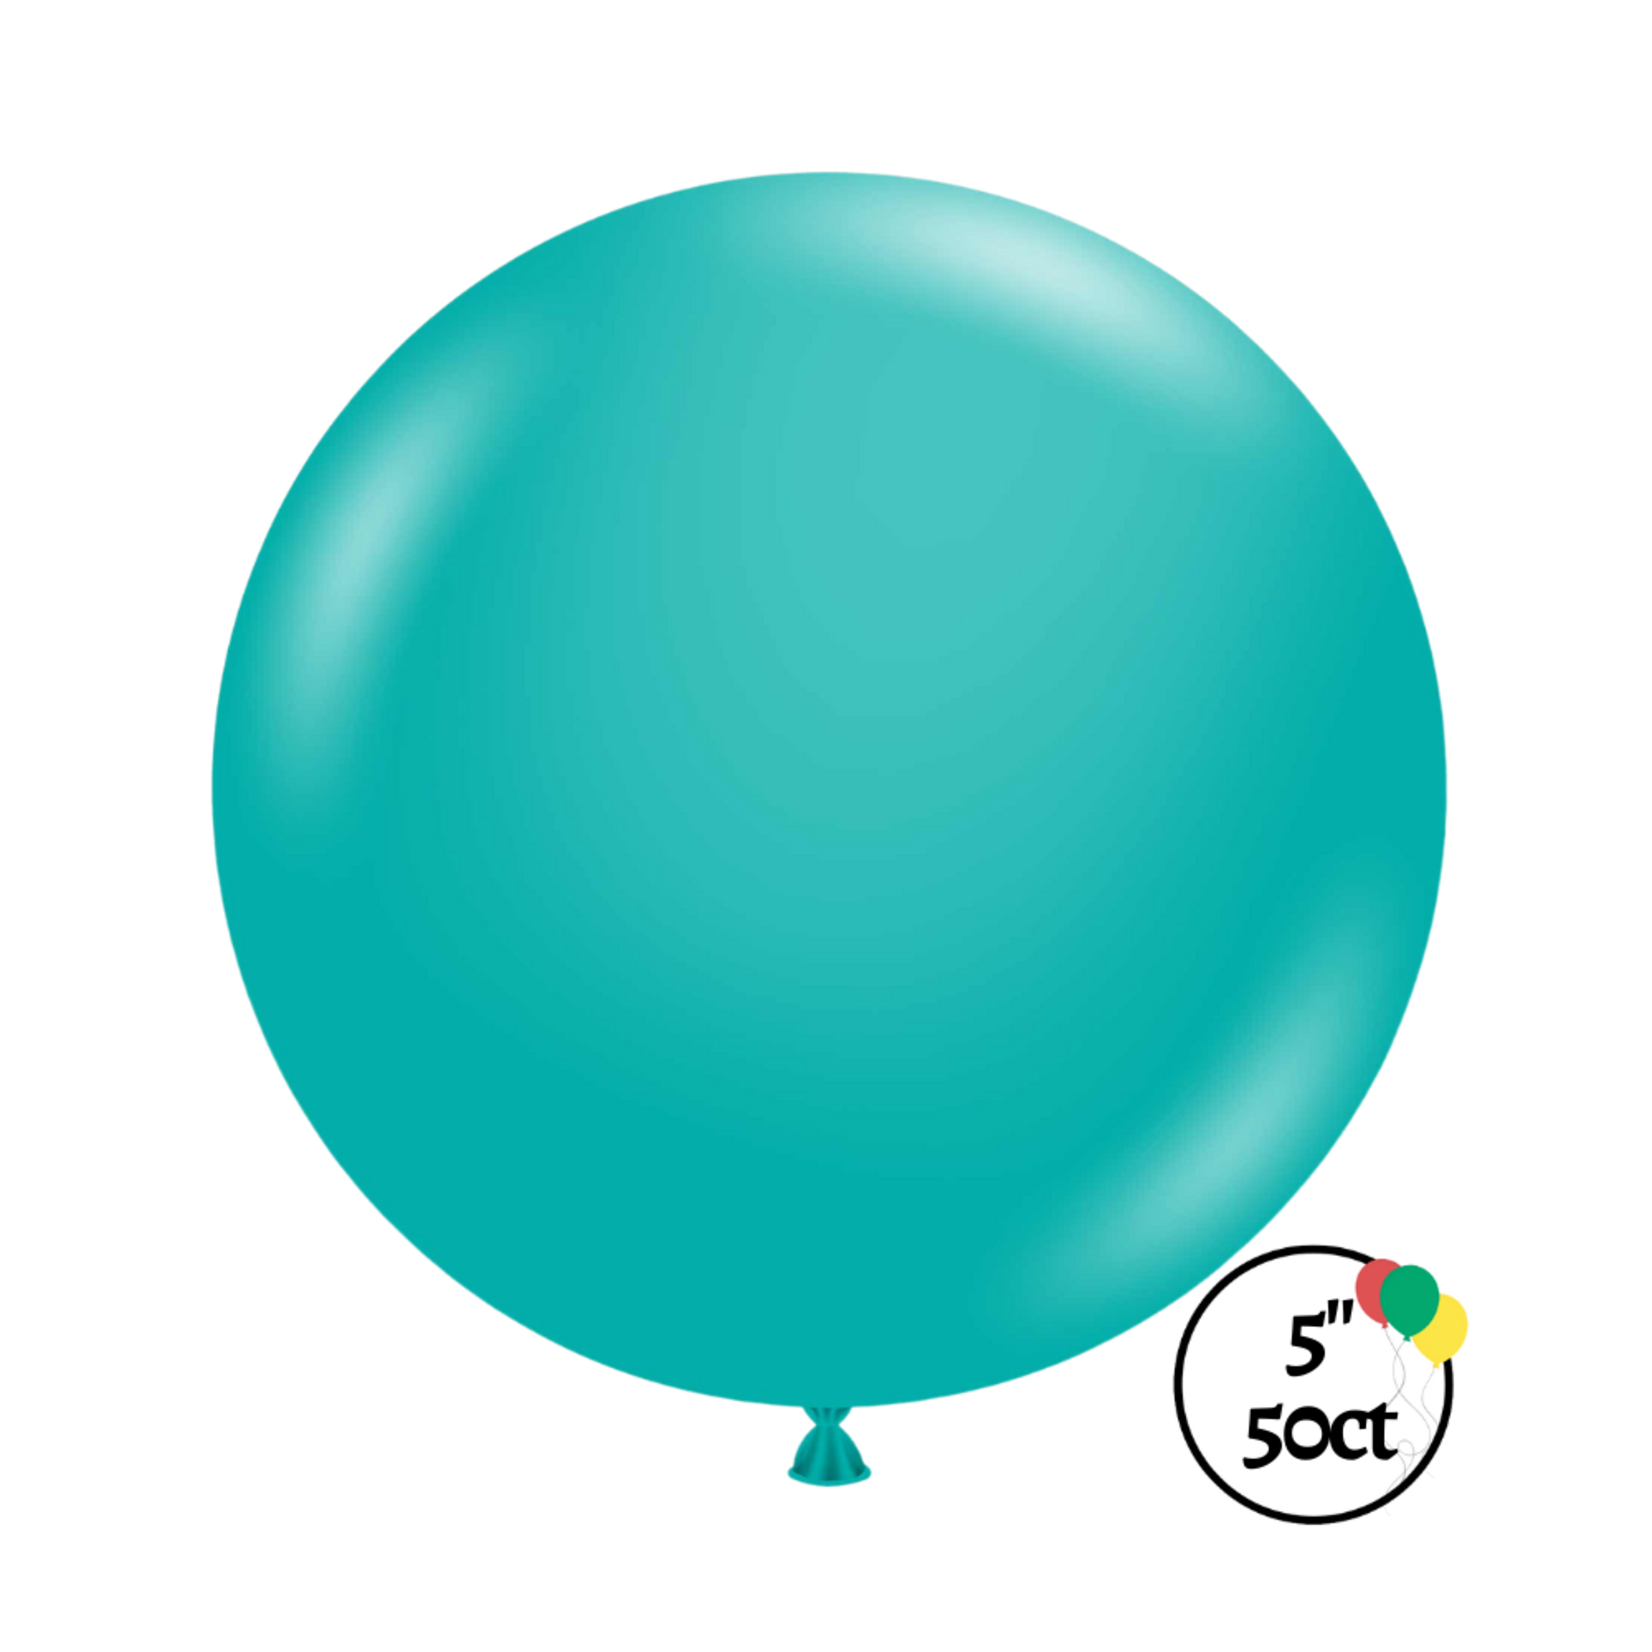 Tuftex 5" Tuftex Teal Balloon 50ct